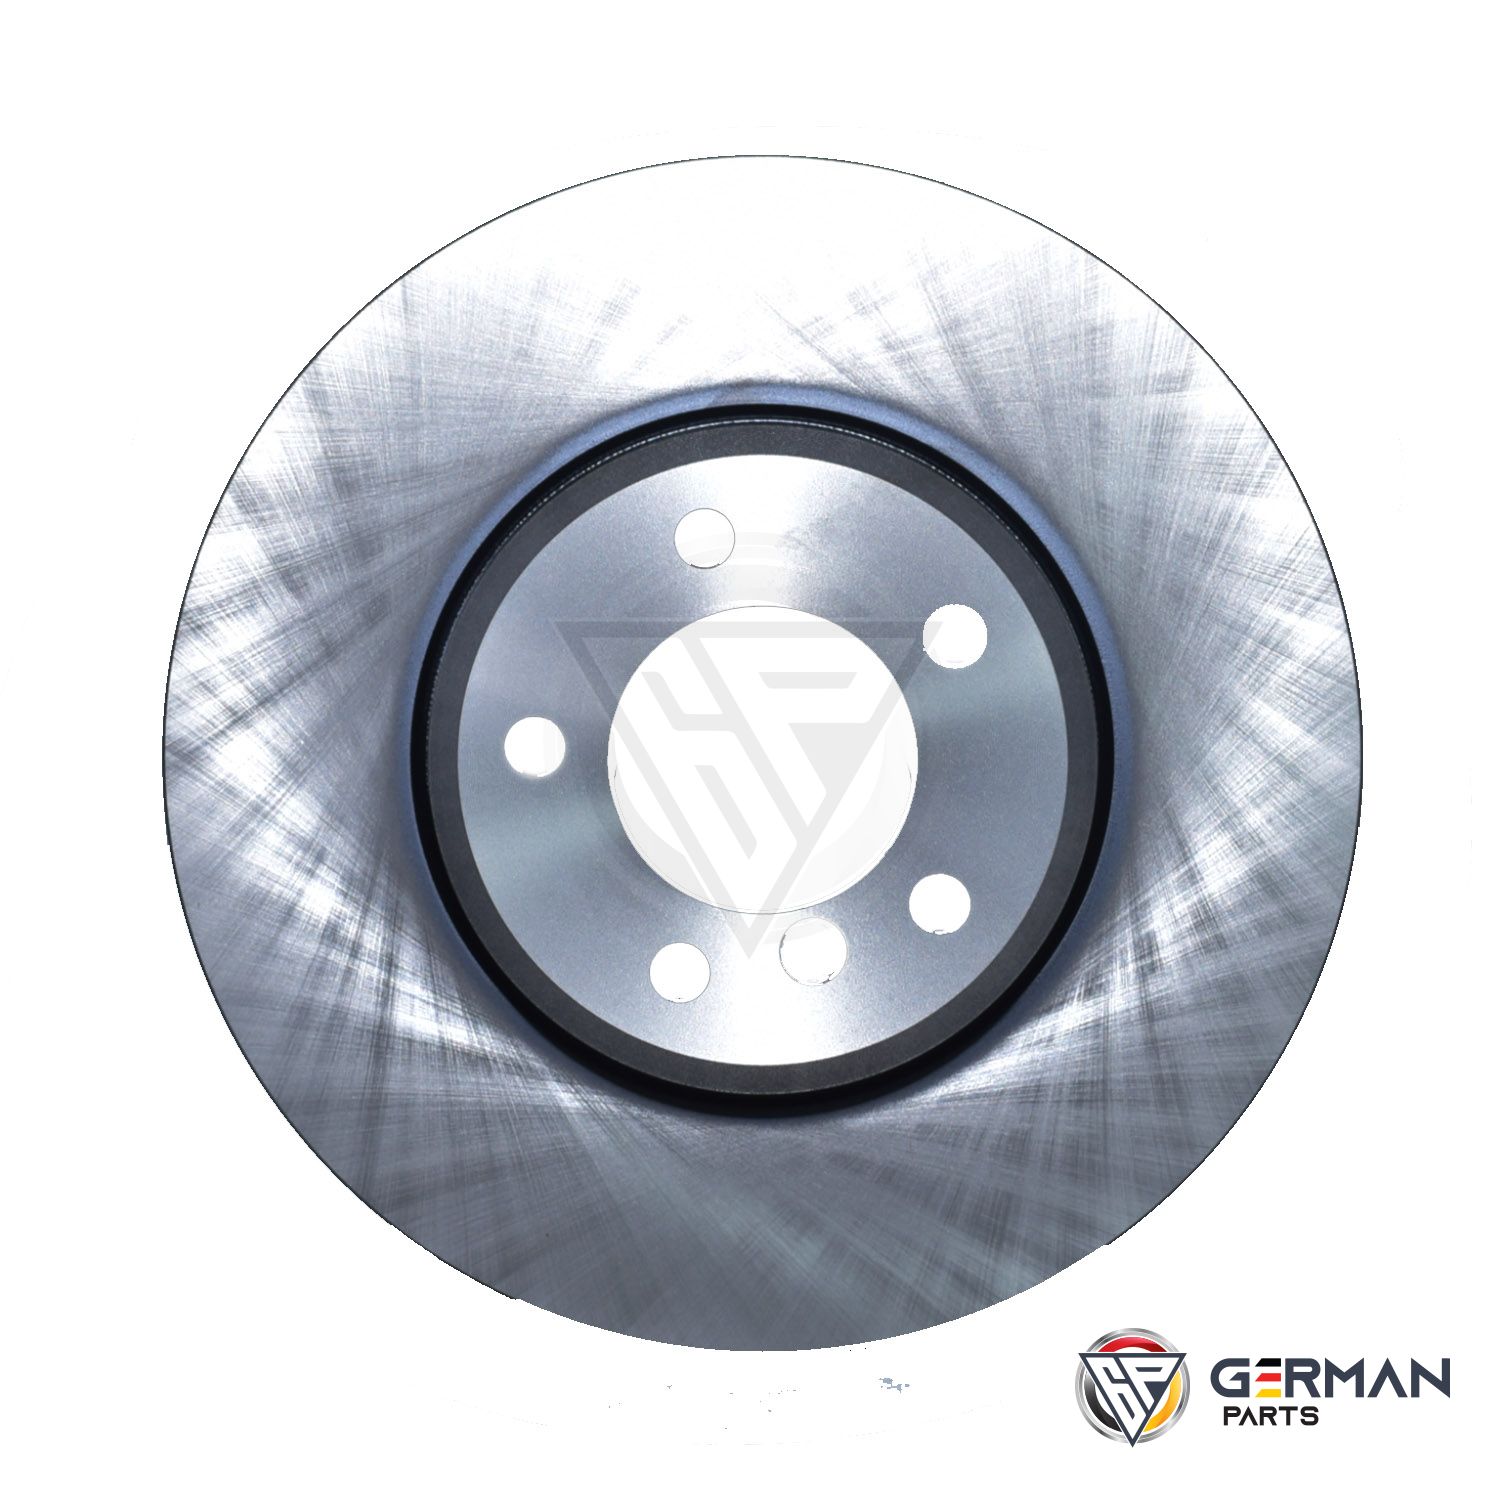 Buy TRW Front Brake Disc 34116753221 - German Parts